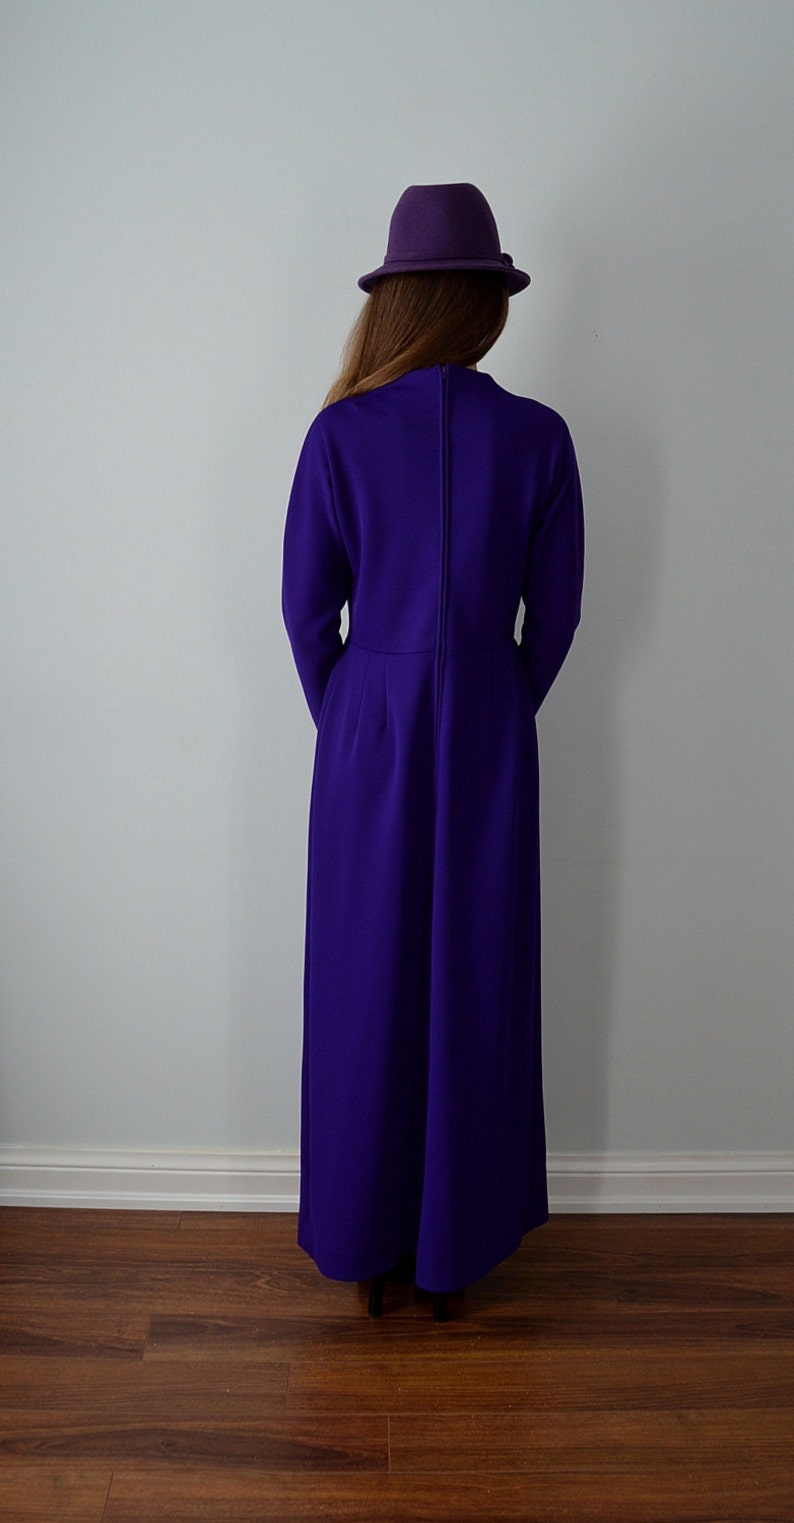 Vintage Leslie Fay Original Dress Purple Evening Gown Vintage Maxi Dress 1950s Gown Dresses Vintage Gown Wedding Formal Leslie Fay